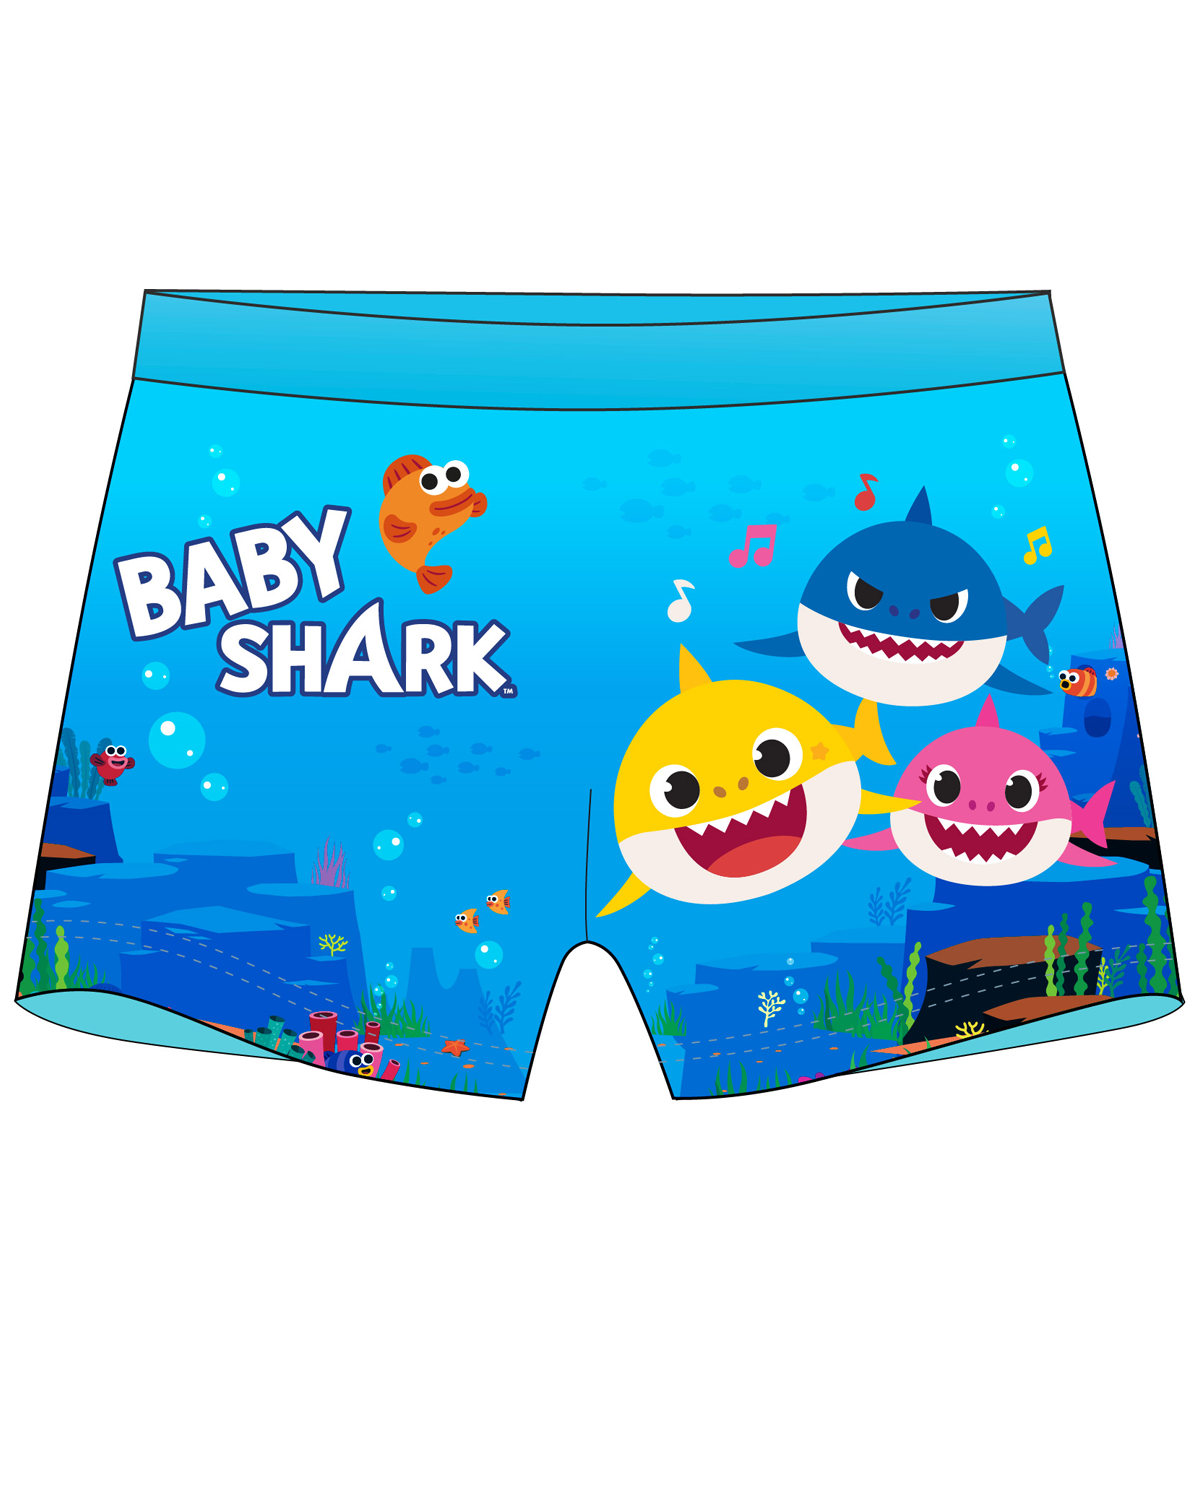 Chlapecké koupací boxerky - Baby Shark 5244051, modrá Barva: Modrá, Velikost: 92-98